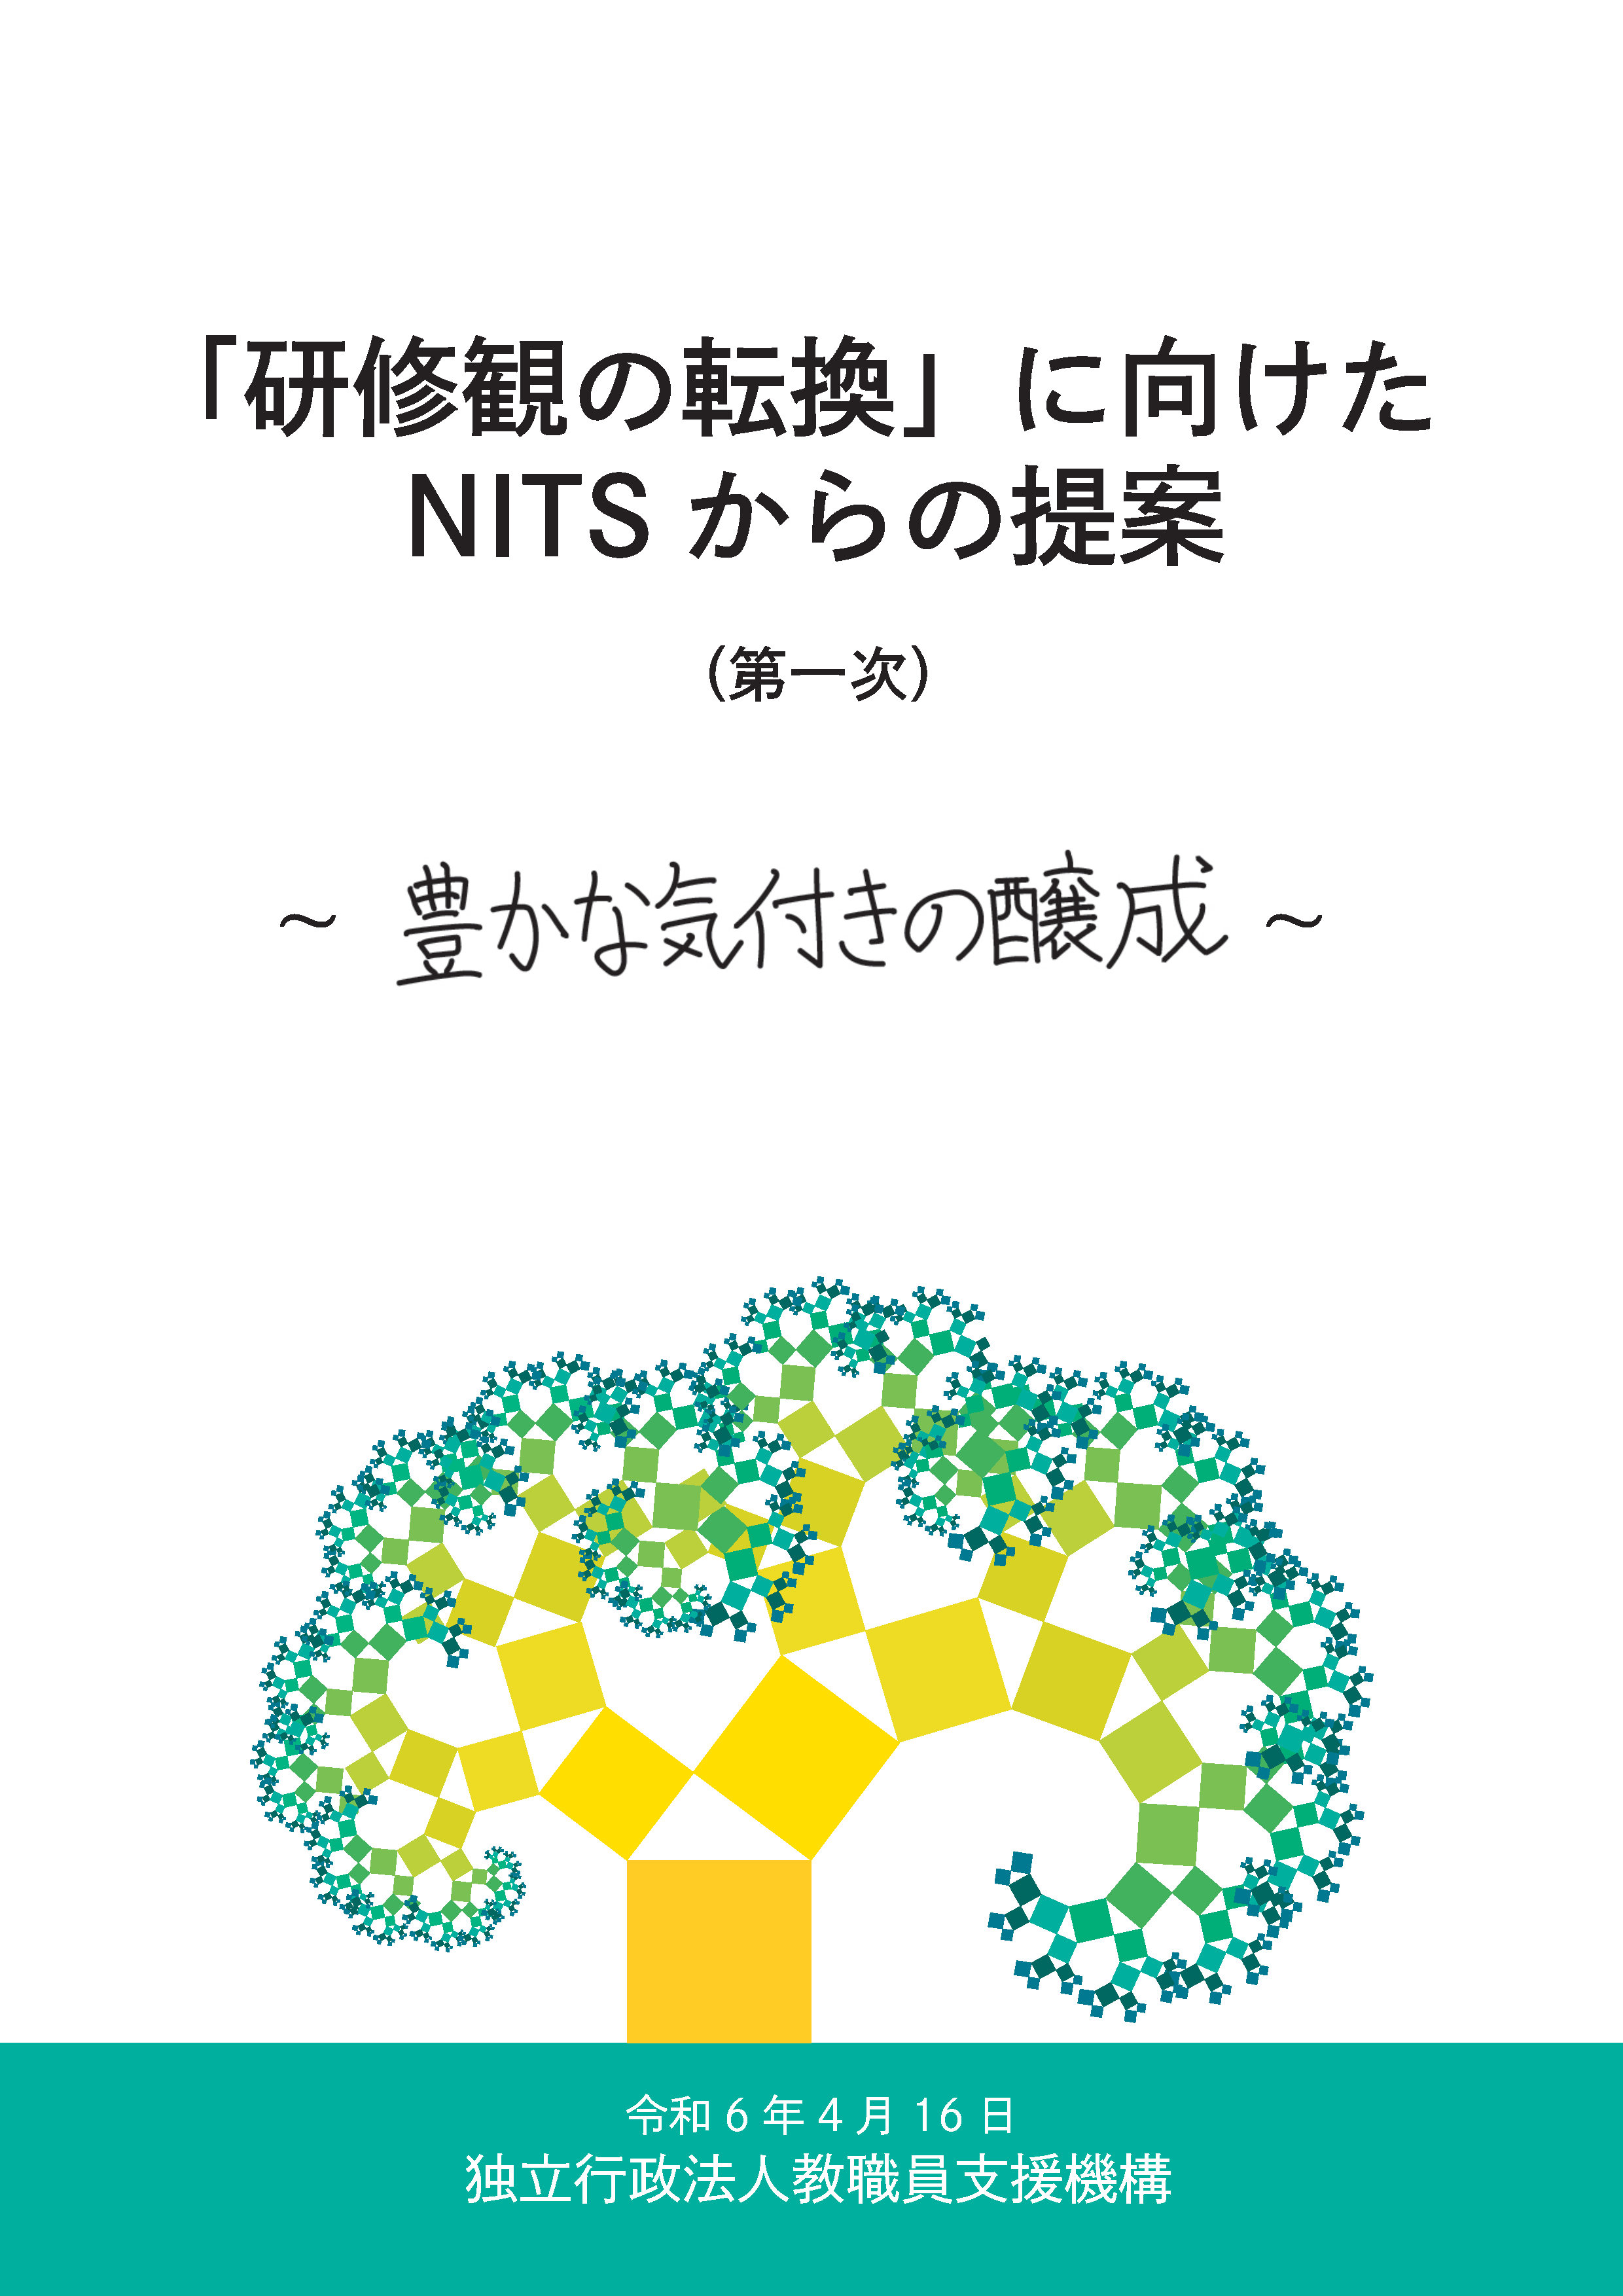 NITSからの提案（第一次）PDF資料表紙